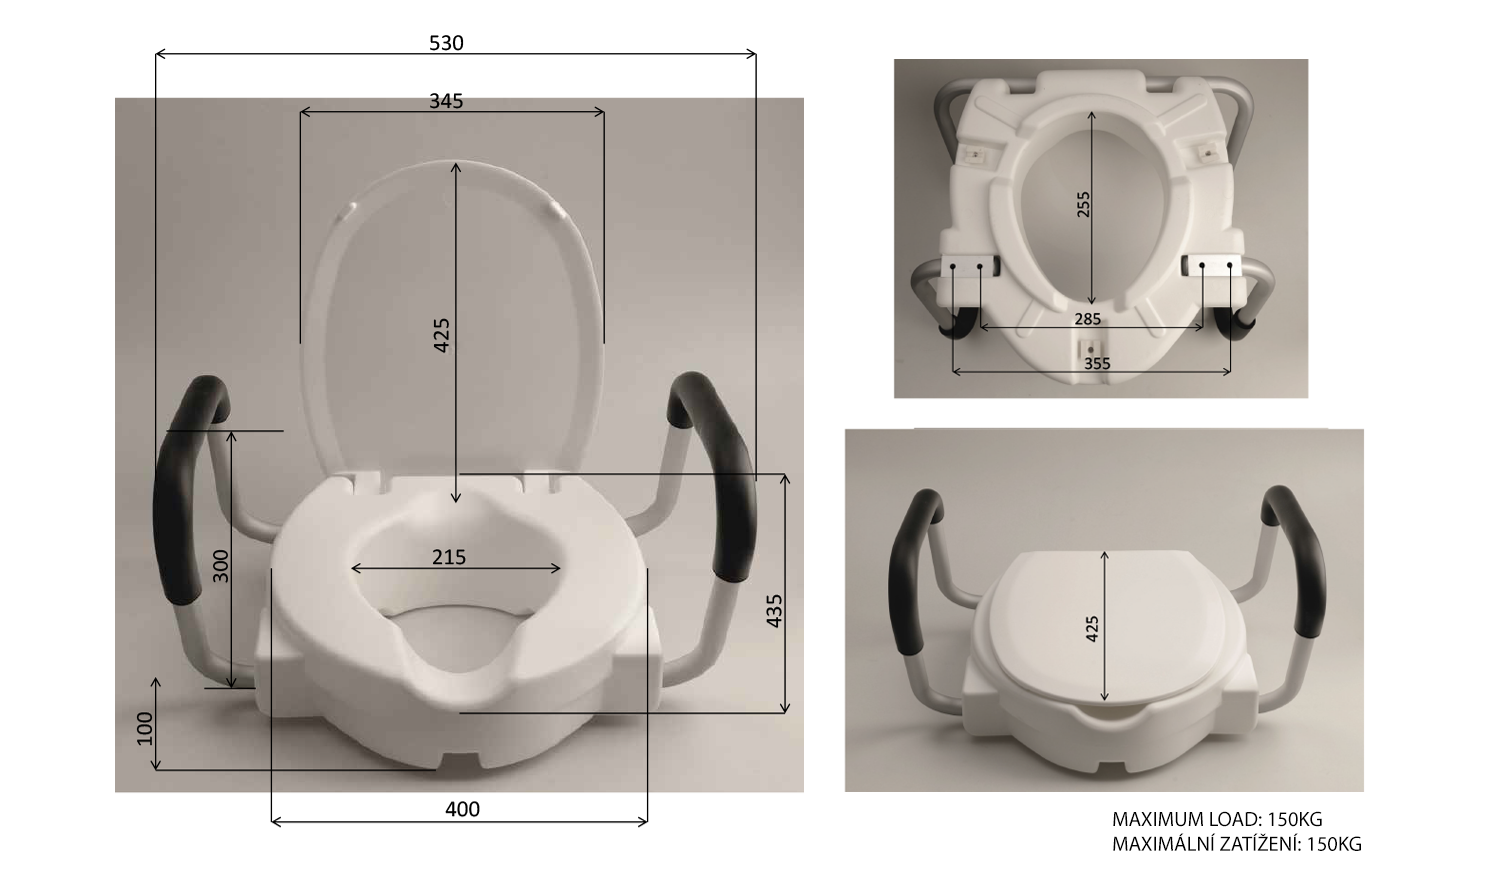 WC-Sitz erhöht um 10 cm, inkl. Haltegriffe, weiß